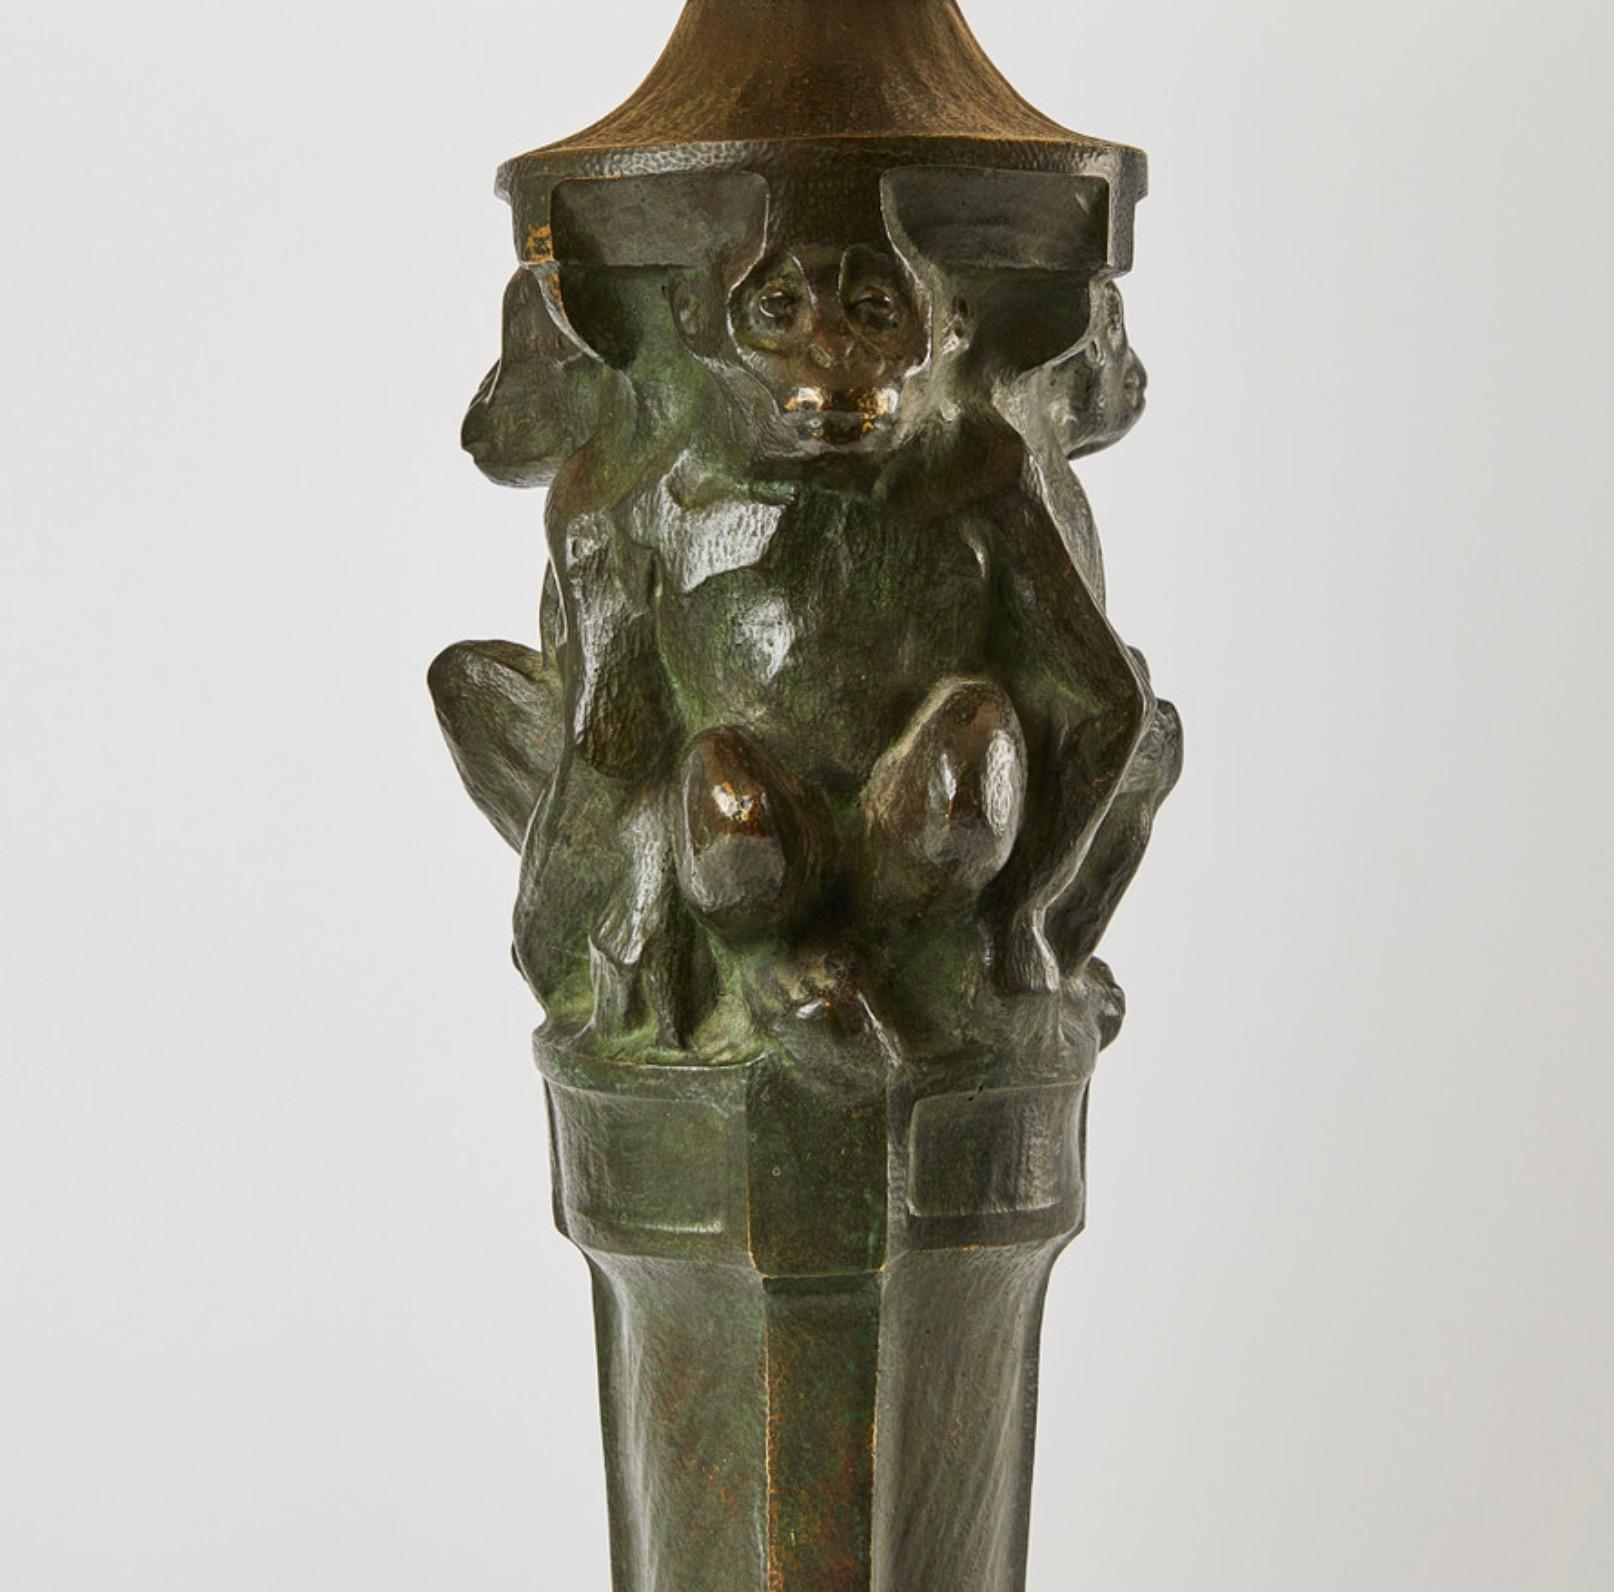 Lampe décorative Art Nouveau en bronze patiné vert avec des singes par Böhlmarks, Stockholm ca.1900. Tout le câblage est neuf et fait dans un style ancien. L'abat-jour est moderne. 
Böhlmarks a été fondée en 1872 par Arvid Böhlmark et importait des